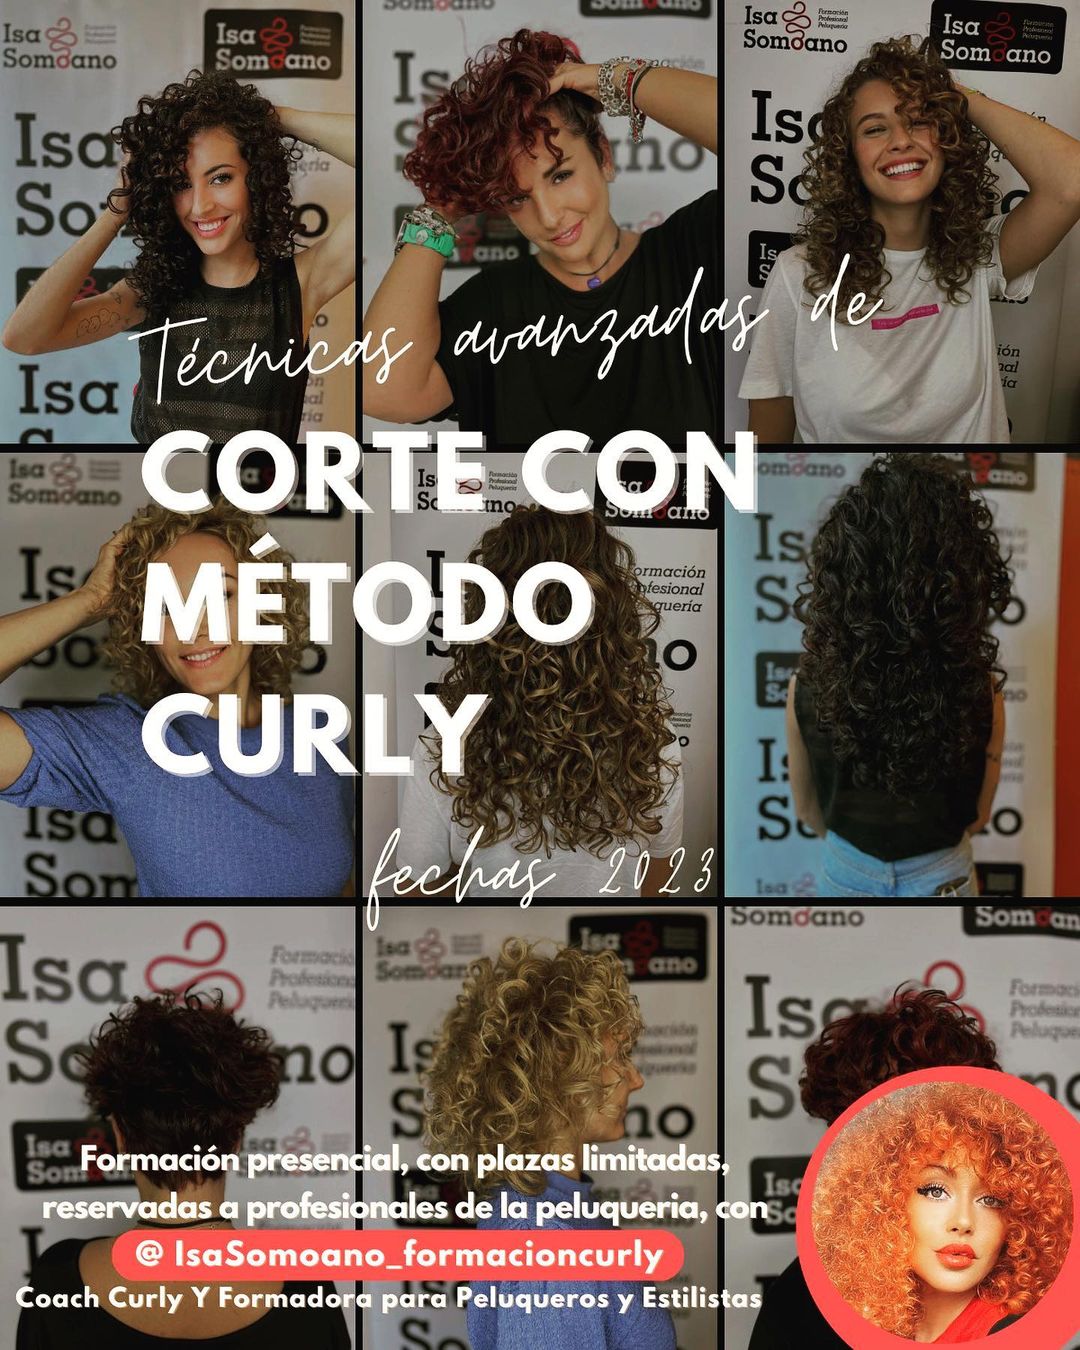 Isa Somoano - Formación Curly - Corte con Método Curly